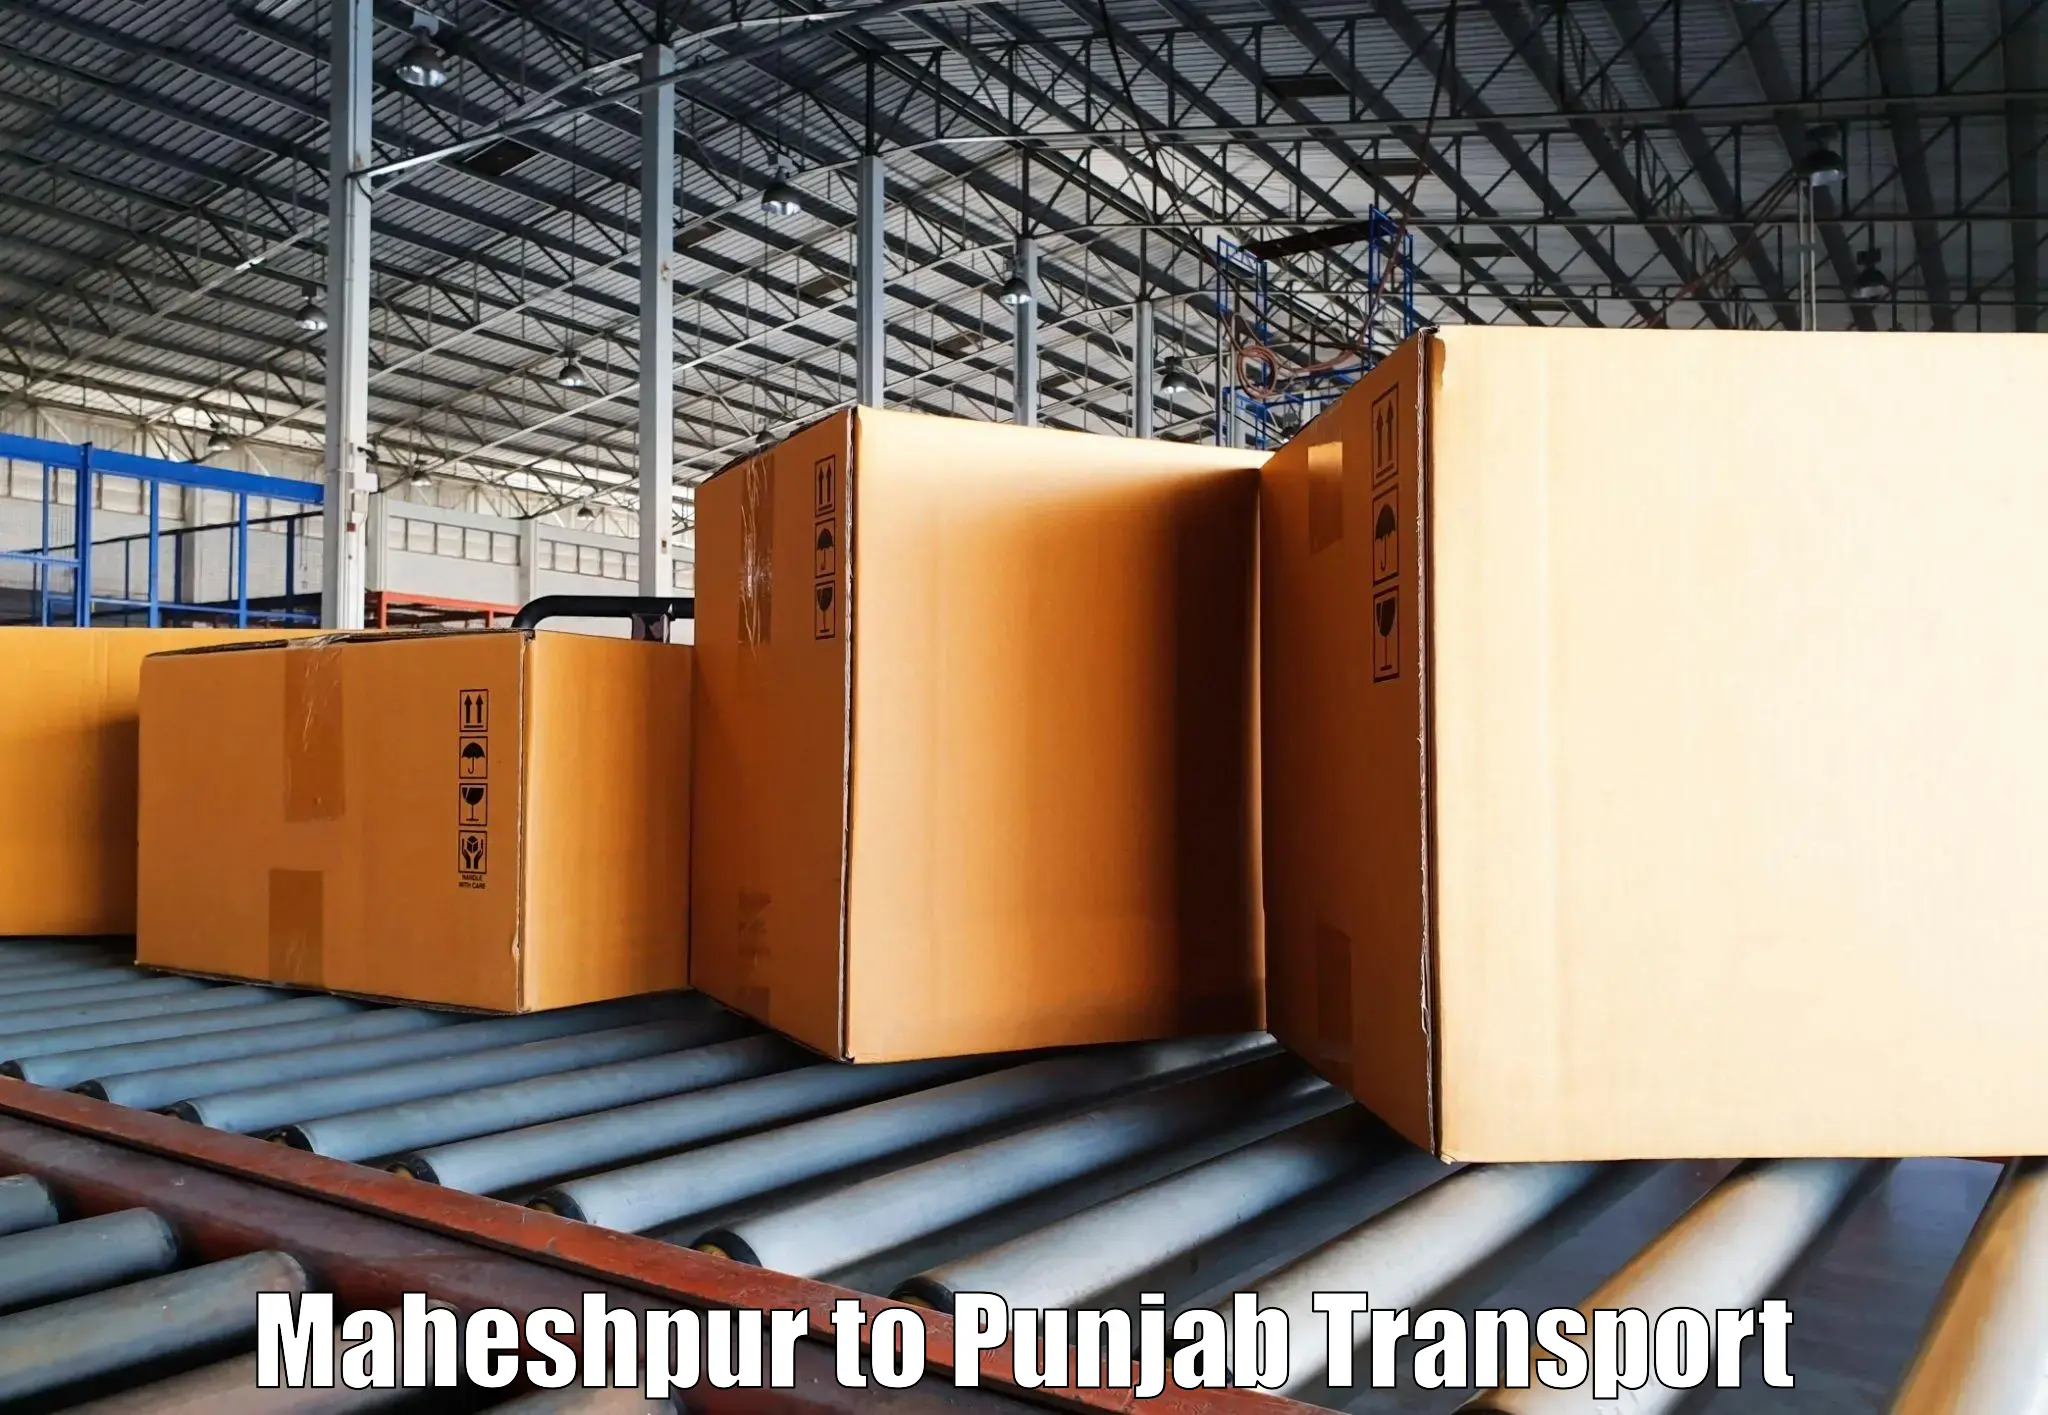 Commercial transport service Maheshpur to Hoshiarpur